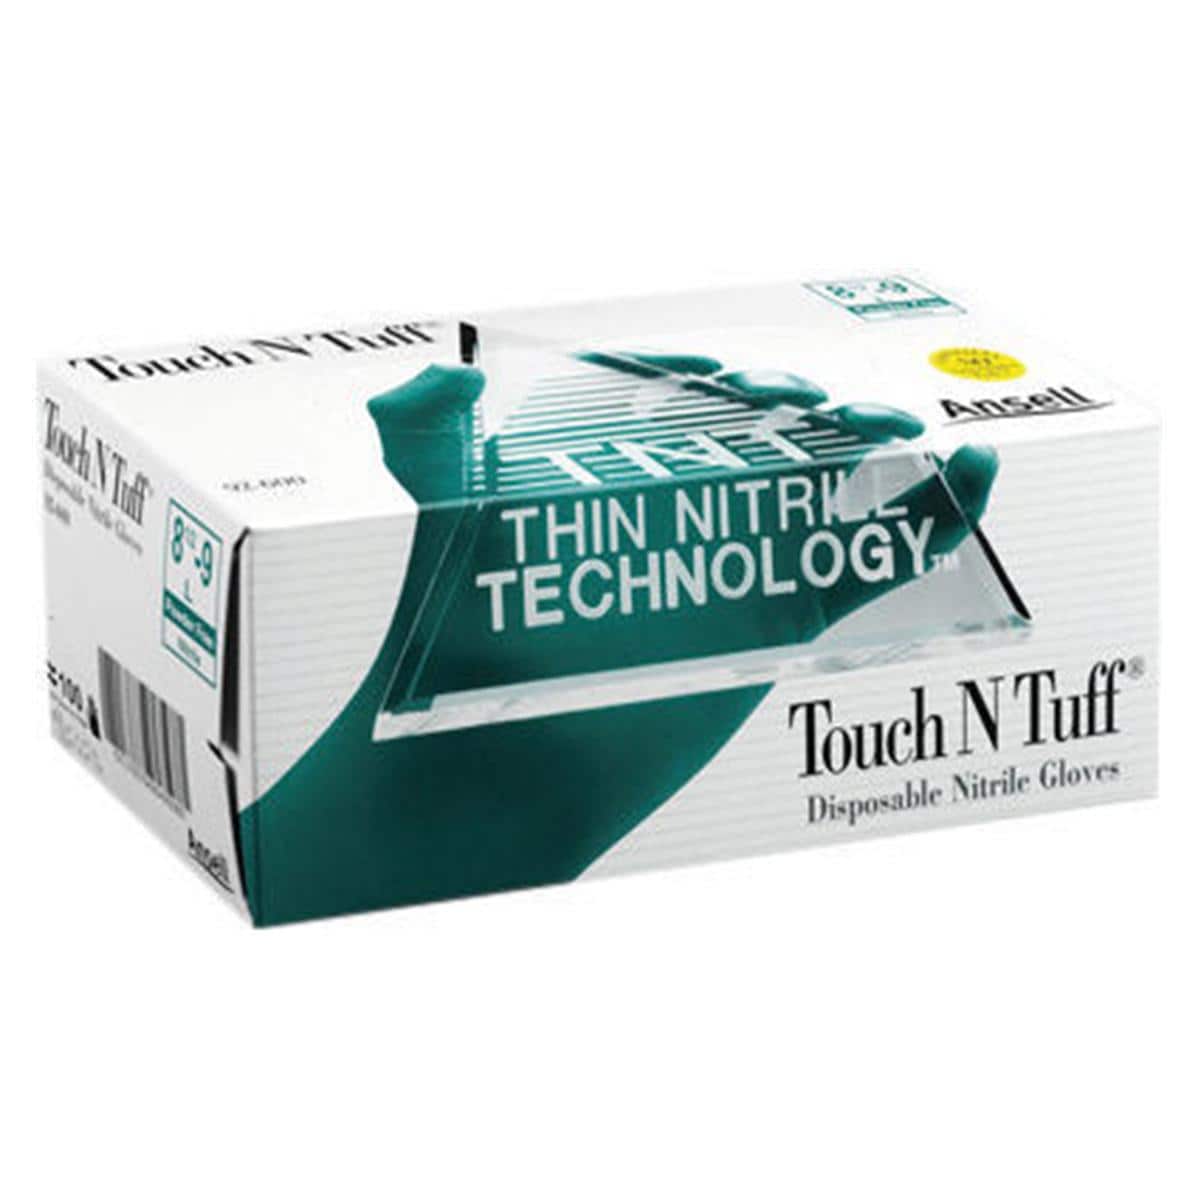 Touch N Tuff Nitrilhandschuhe - Größe M, 7,5 - 8, Packung 100 Stück